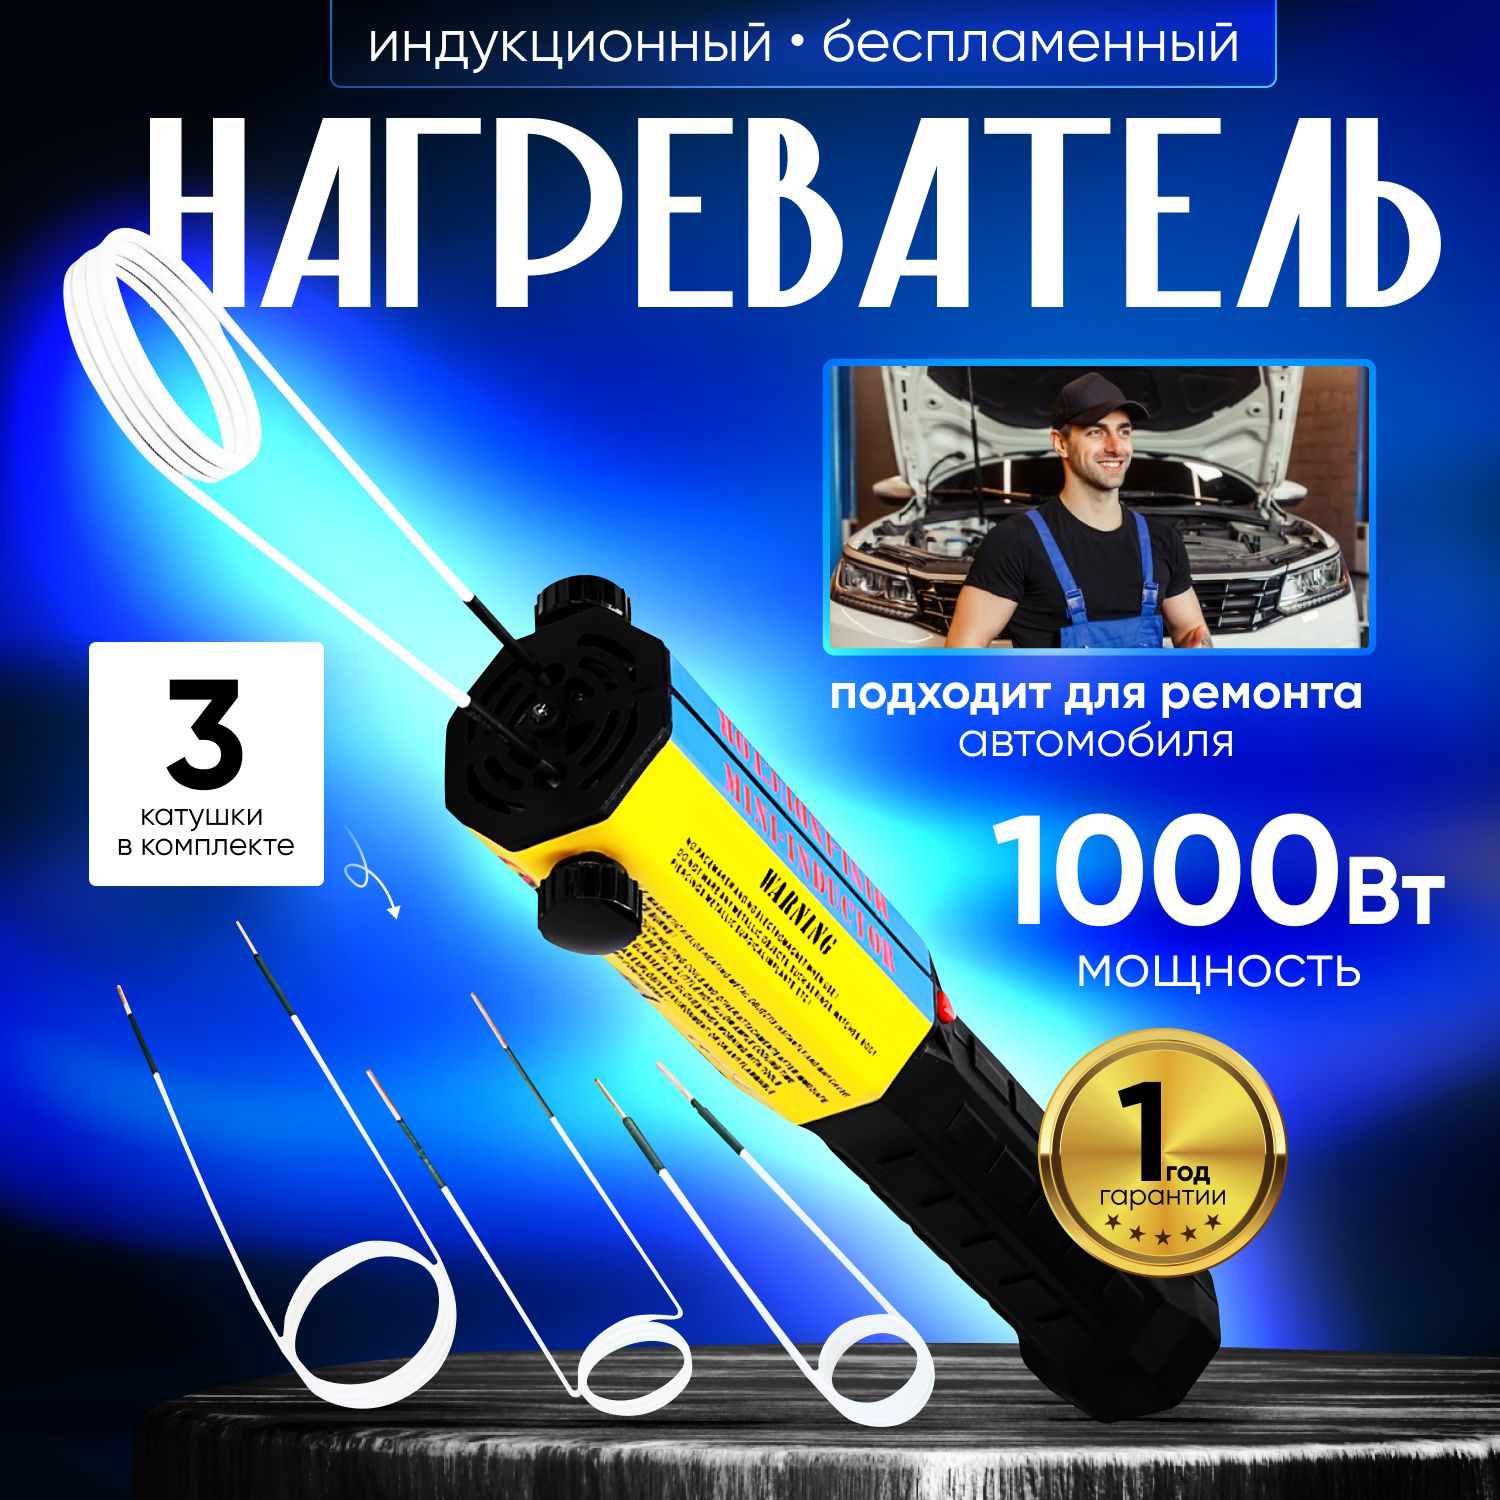 ИндукционныйНагревательБолтов1000Вт/Беспламенныйнагревболтовиметалла